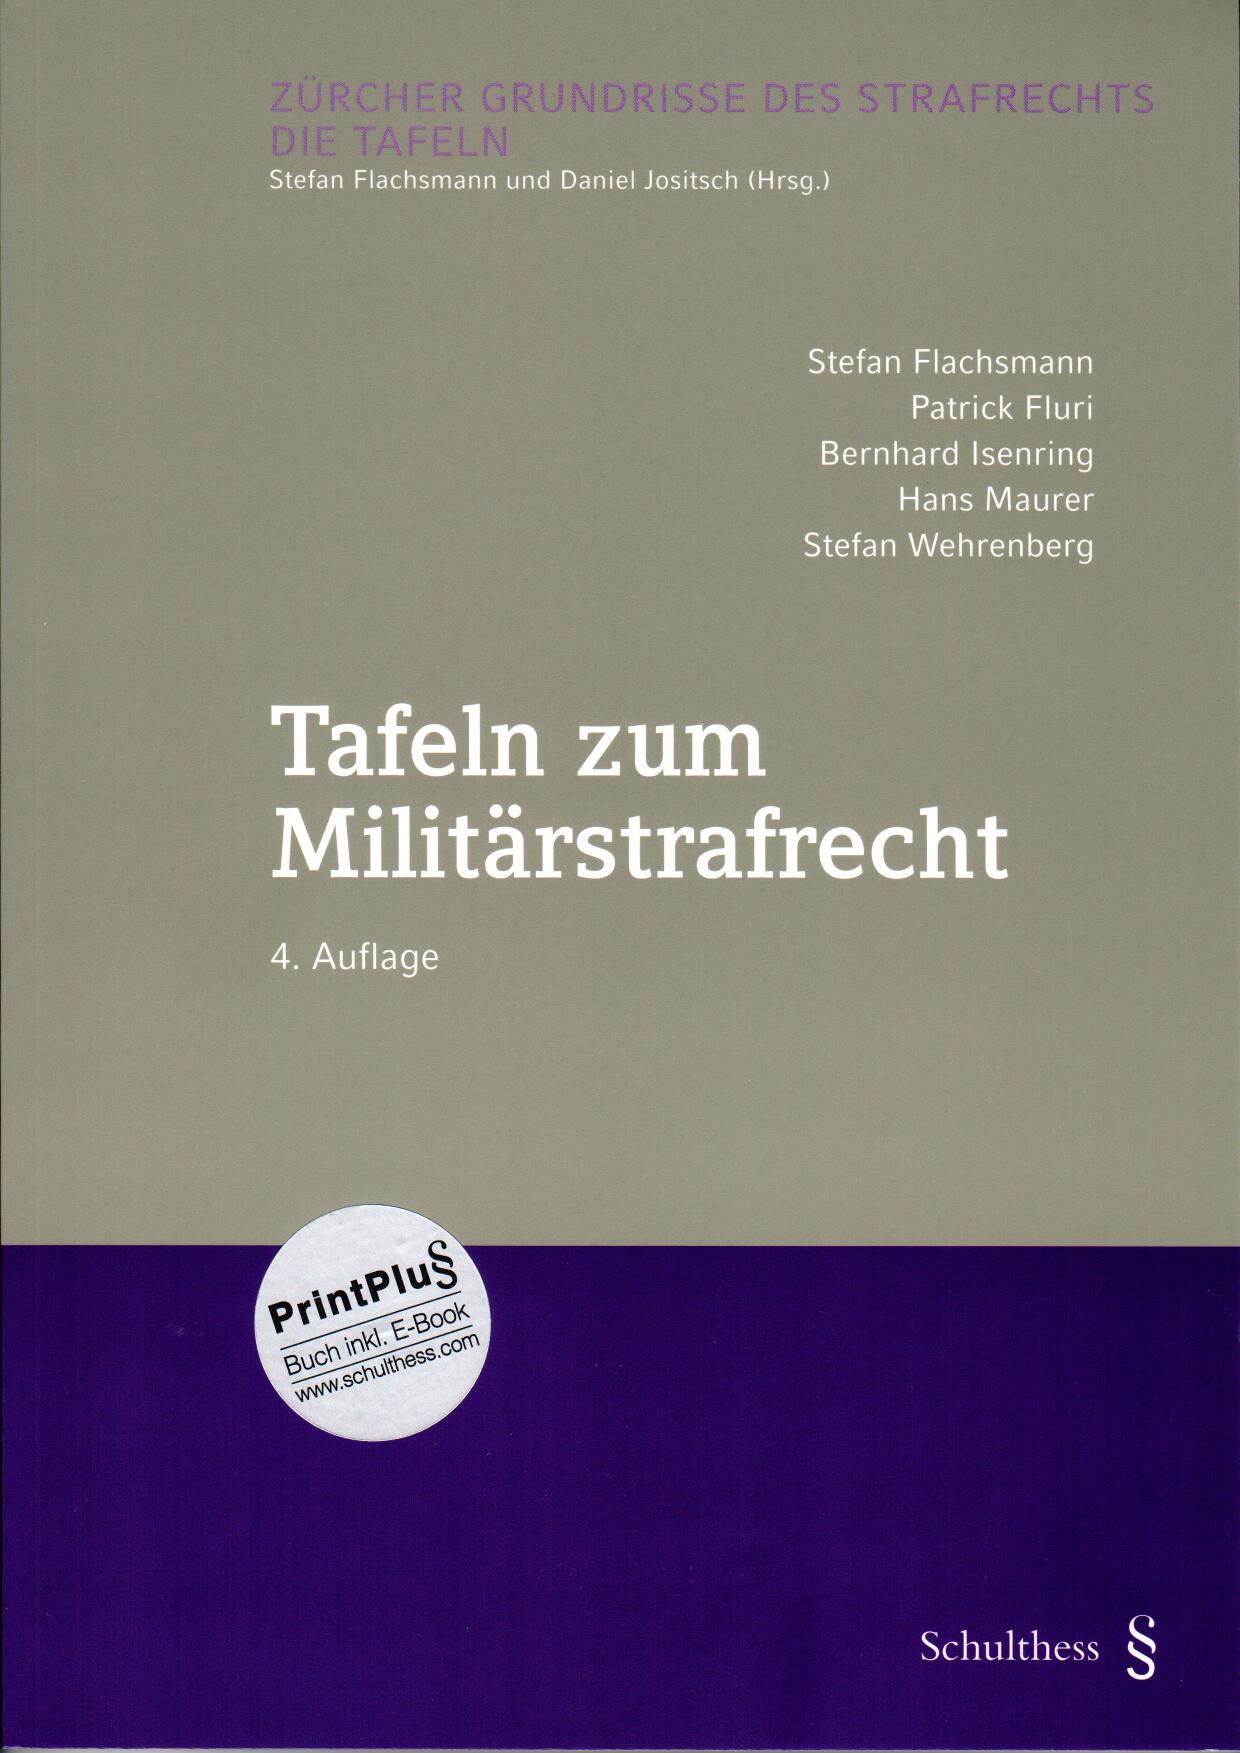 Tafeln zum Militärstrafrecht, 4. Auflage